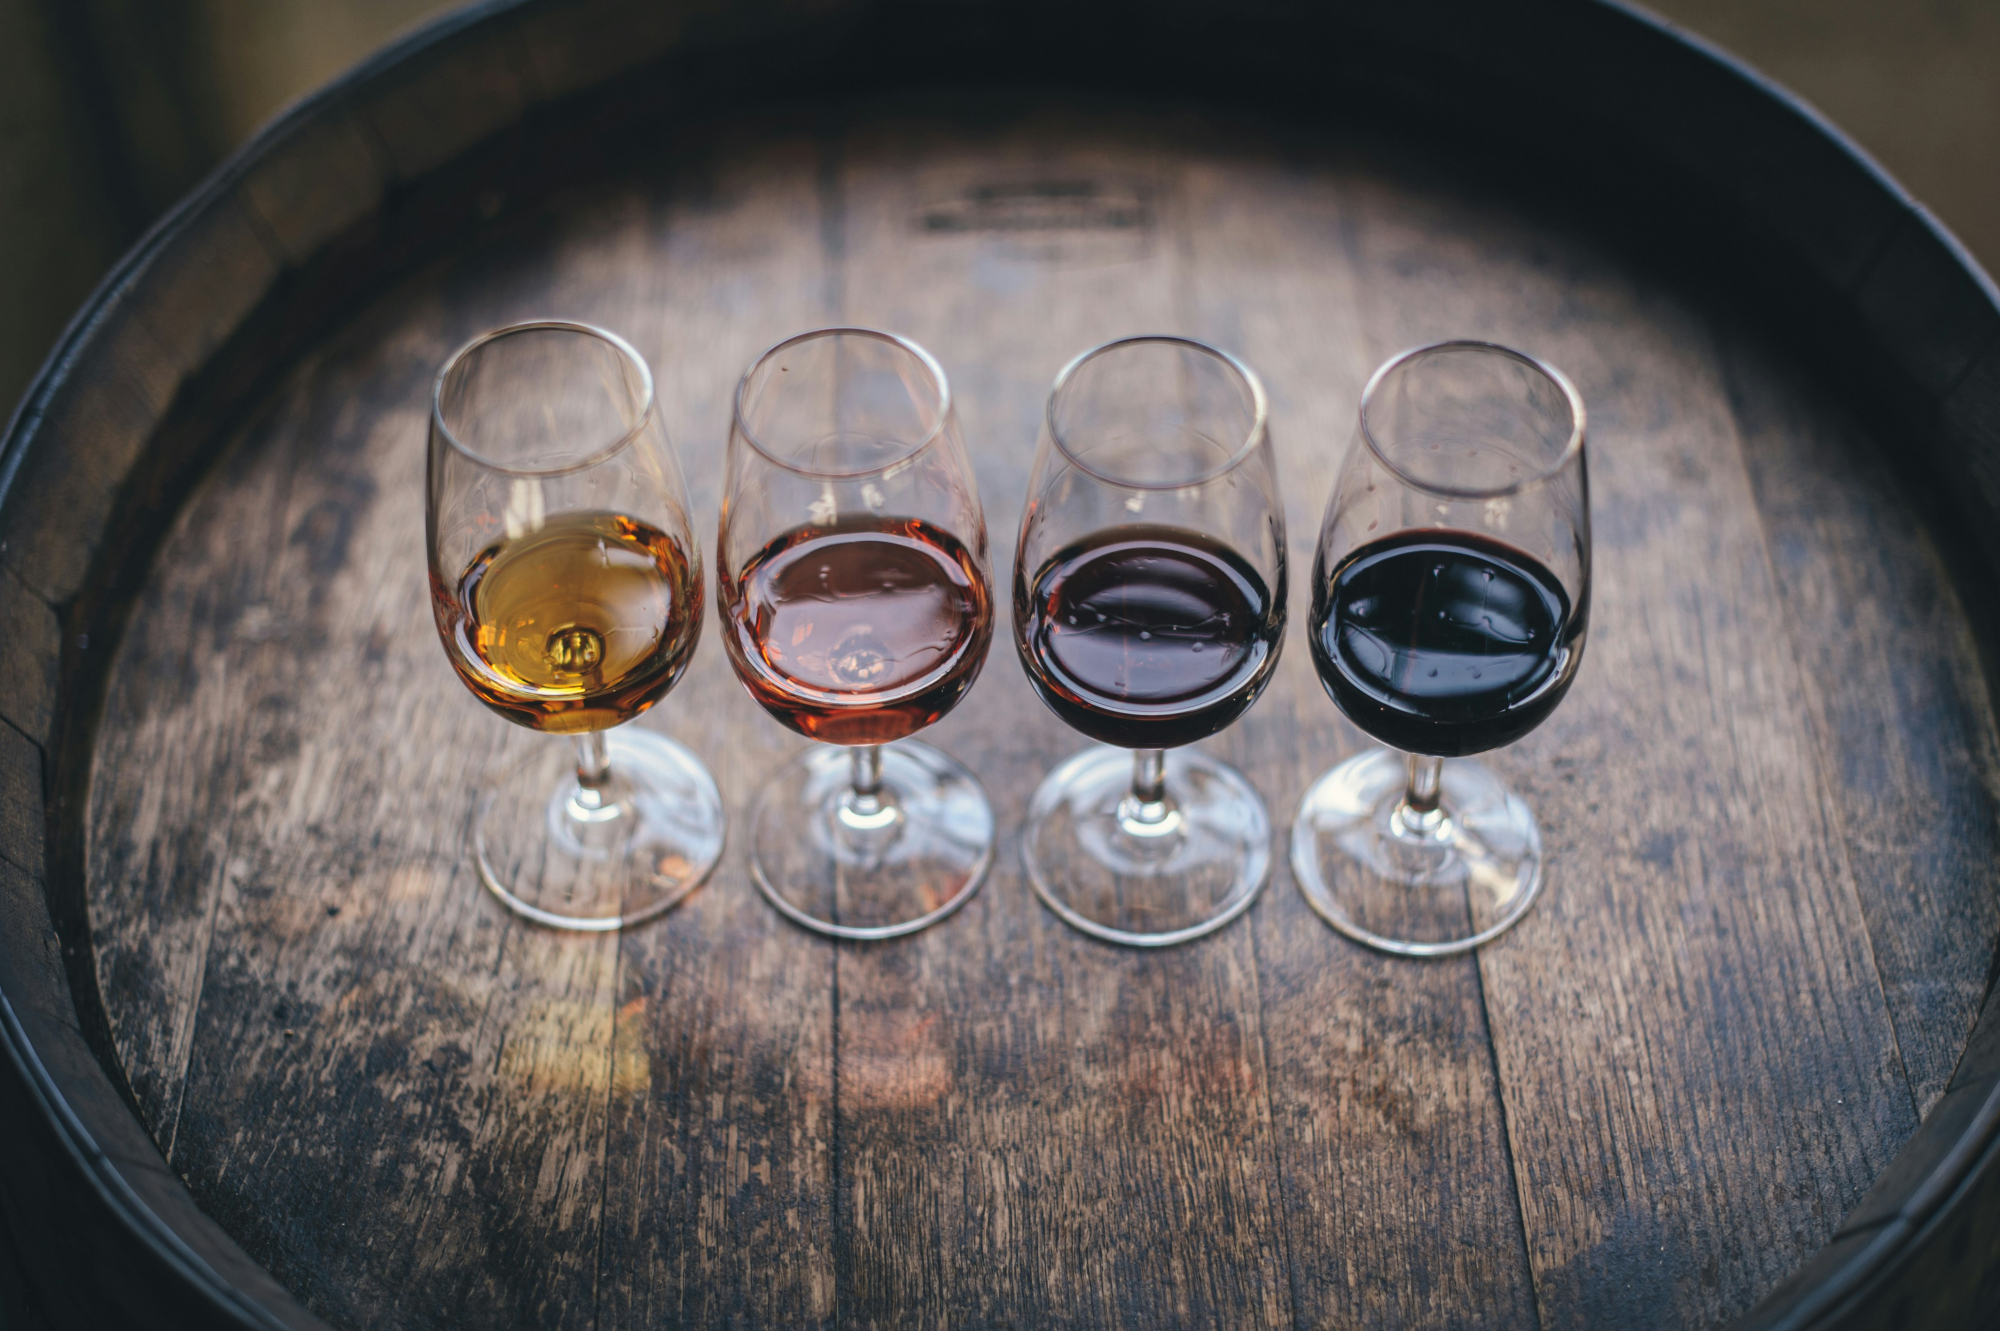 découvrez l'art de la dégustation de vins avec nos experts : arômes, saveurs et terroirs n'auront plus de secrets pour vous.